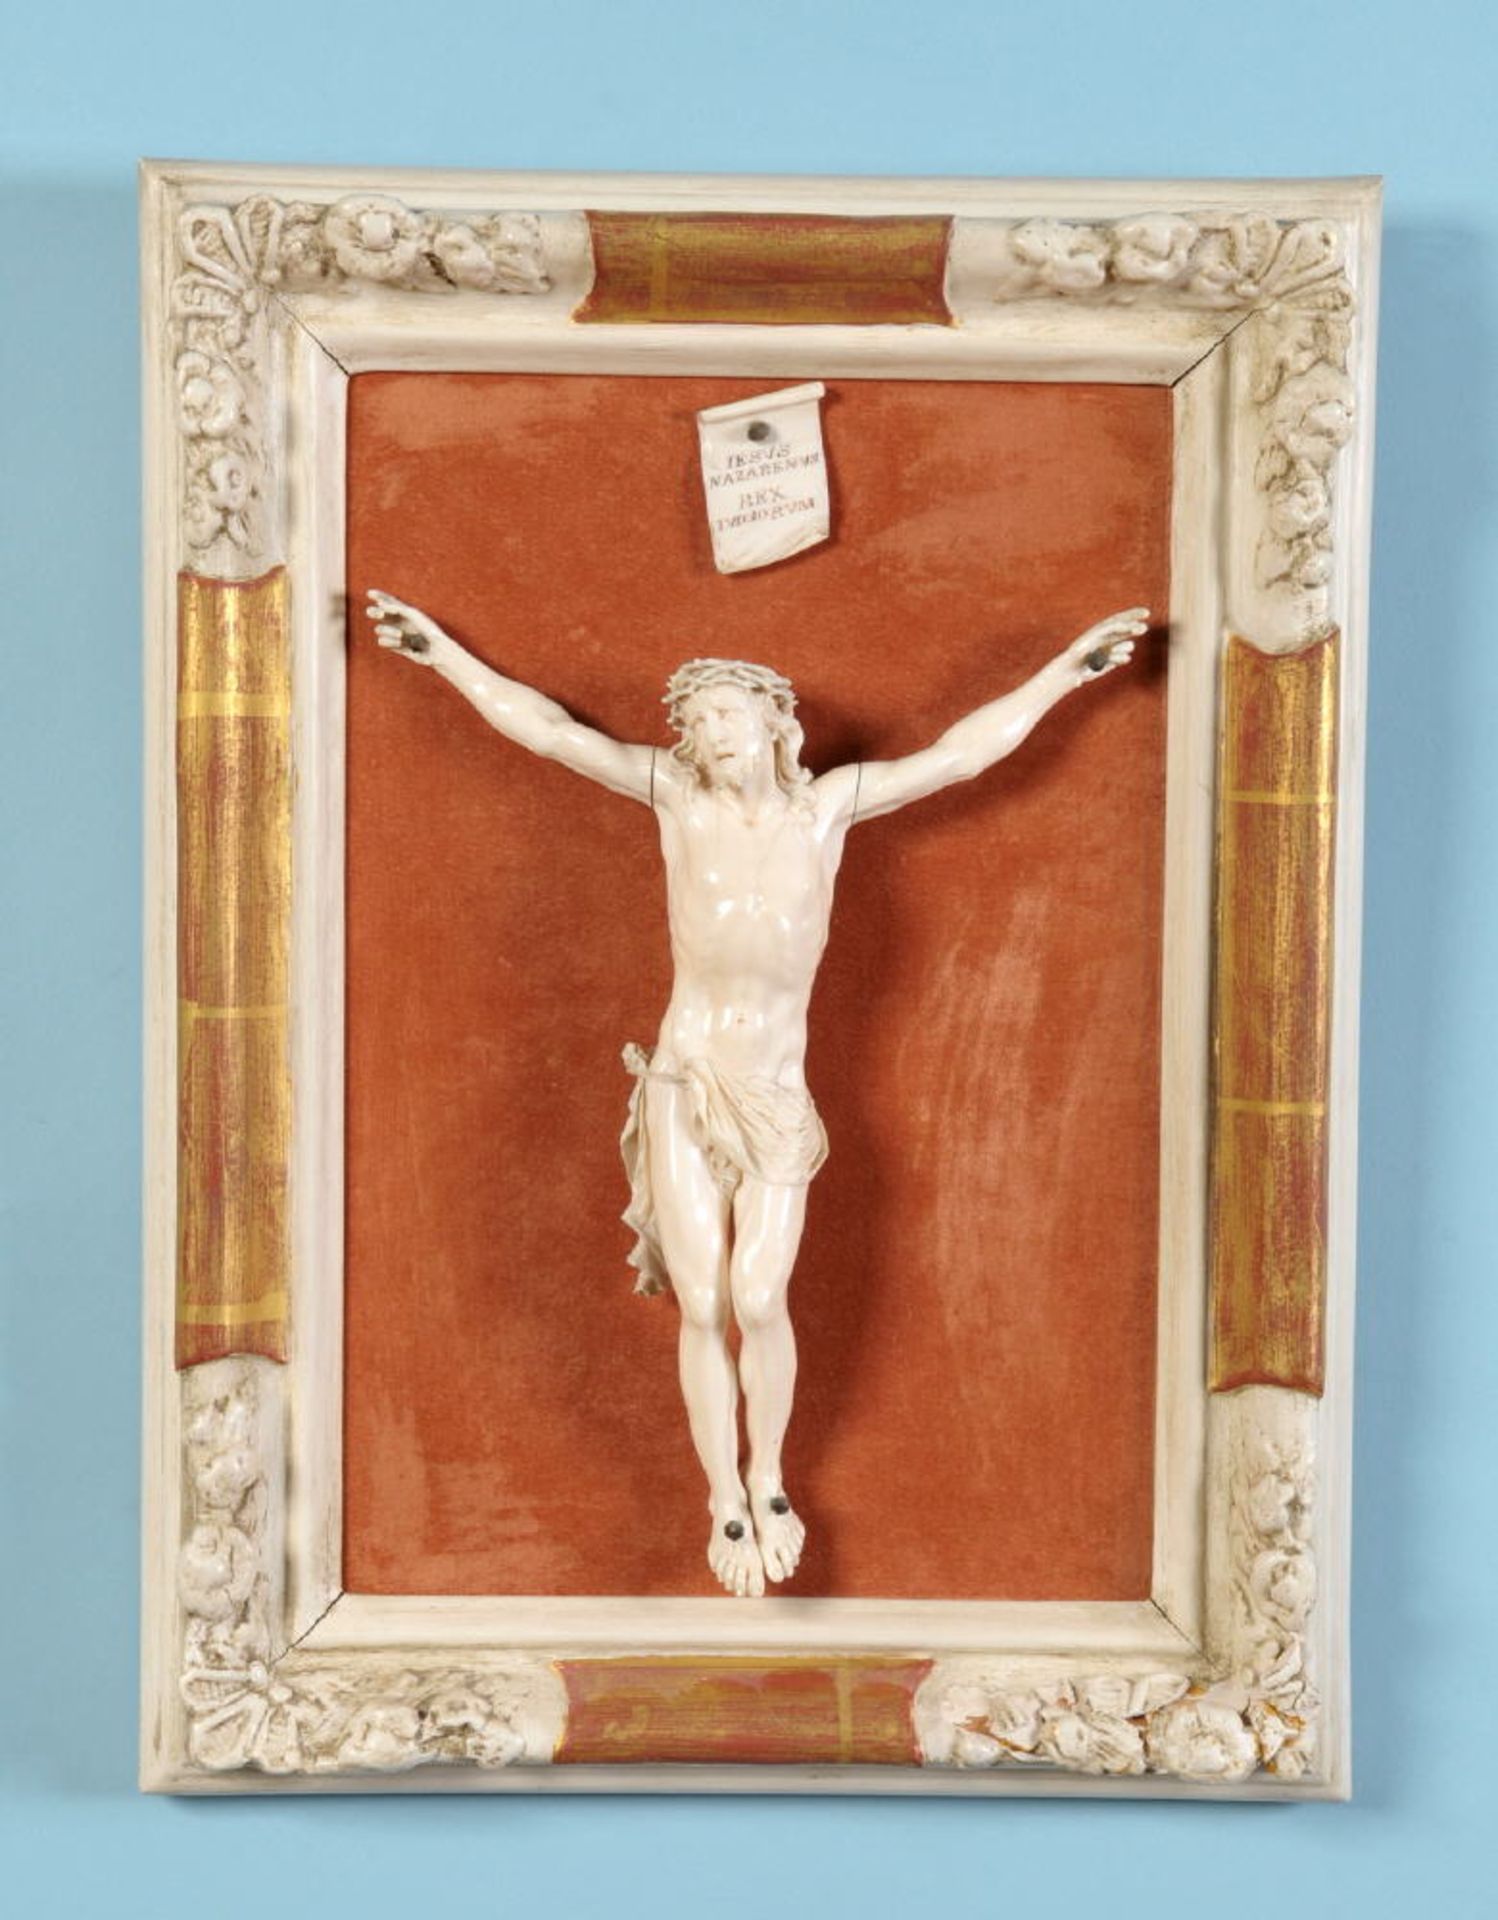 Christus-KorpusBein, H= 24,5 cm, Vier-Nagel-Typus, minim. best., in Rahmen montiert, gesamt 40 x